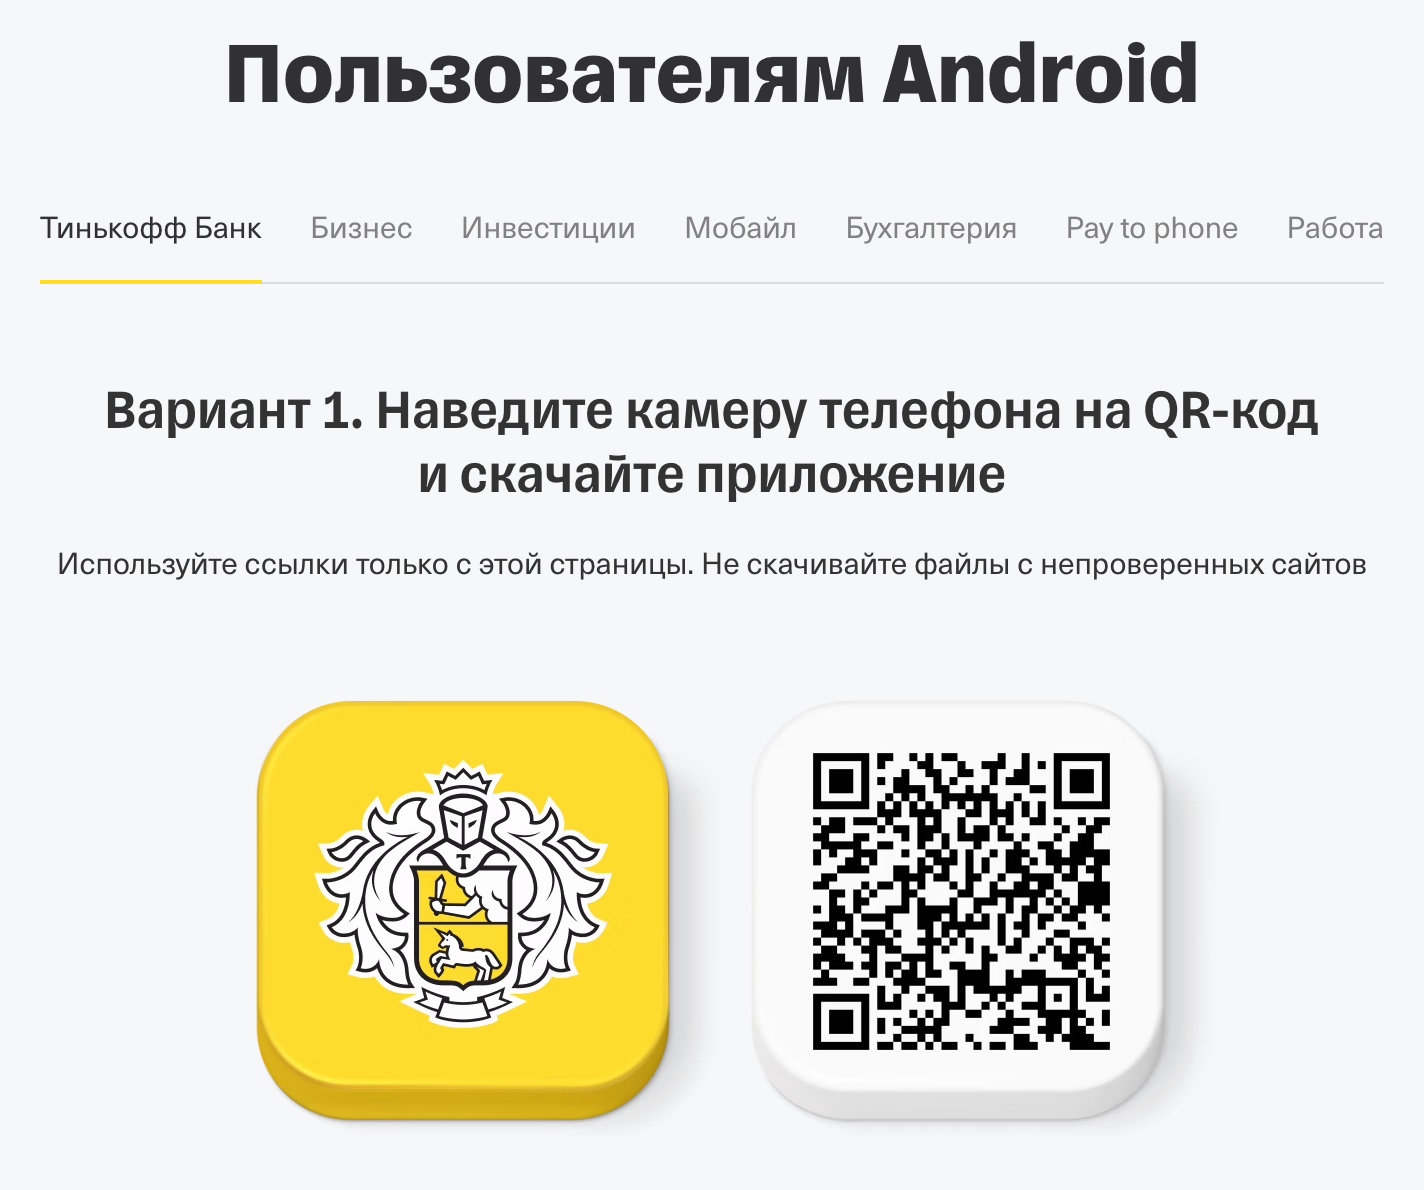 Приложение Тинькофф недоступно в Google Play, но установить свежую версию можно с сайта банка. Источник: tinkoff.ru